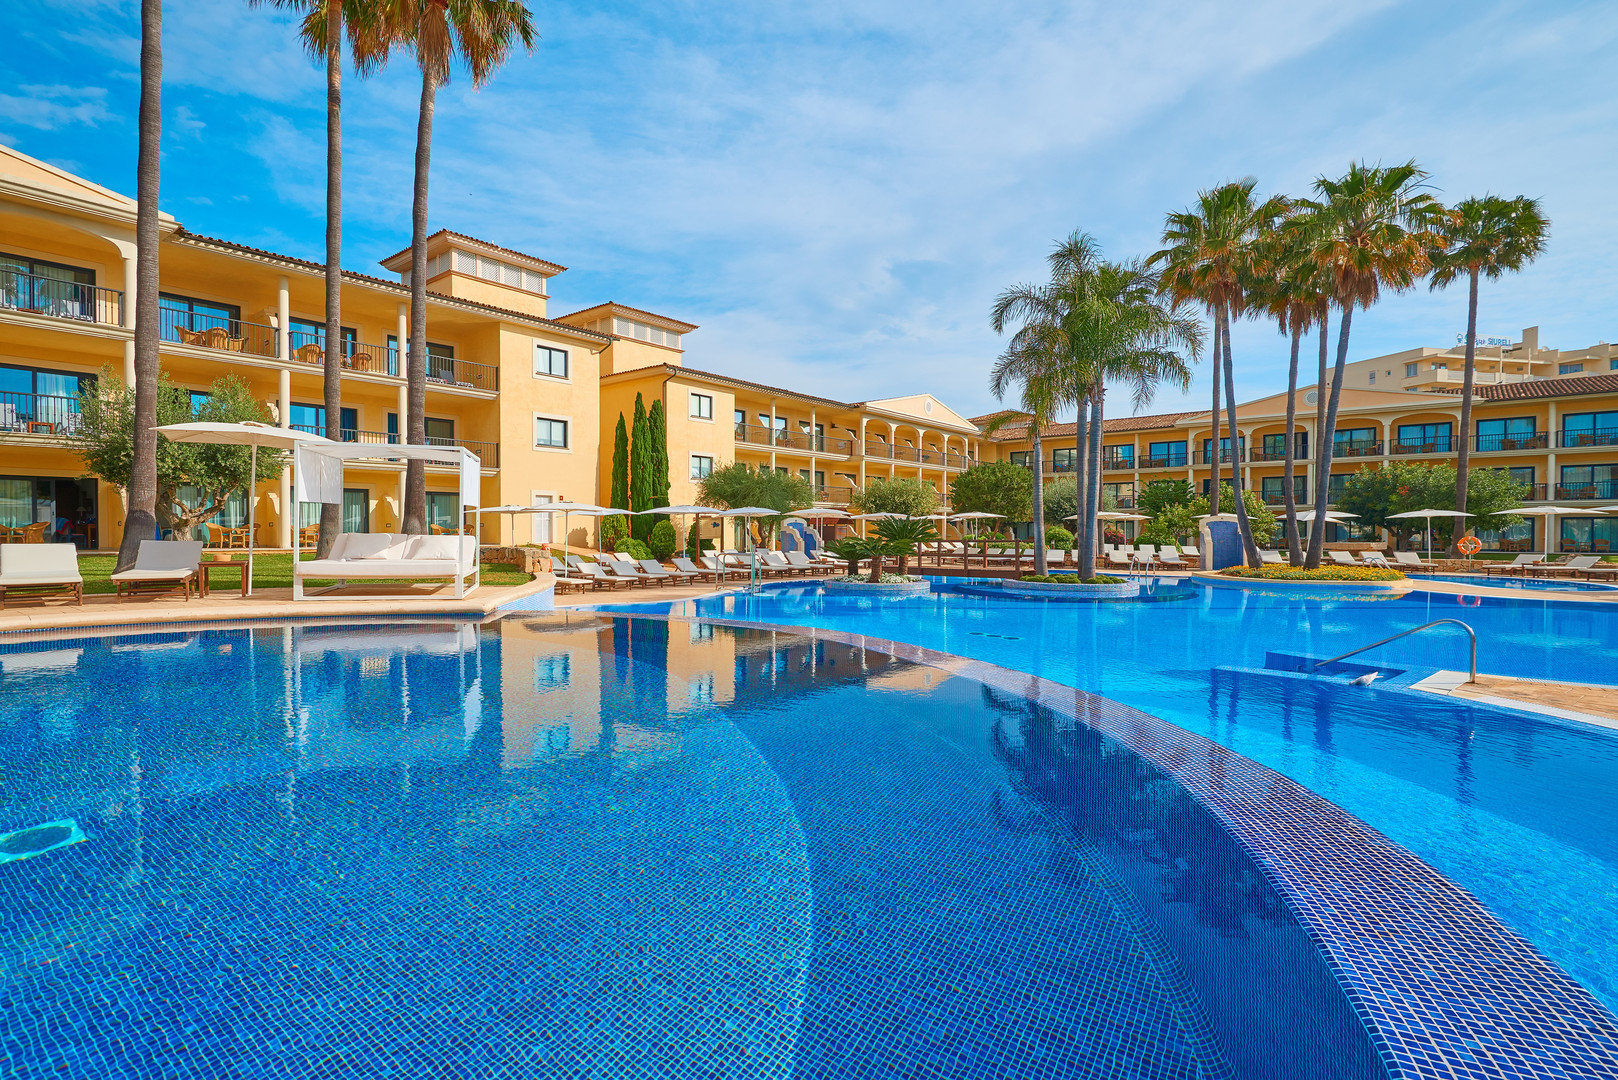 Obrázek hotelu CM Mallorca Palace